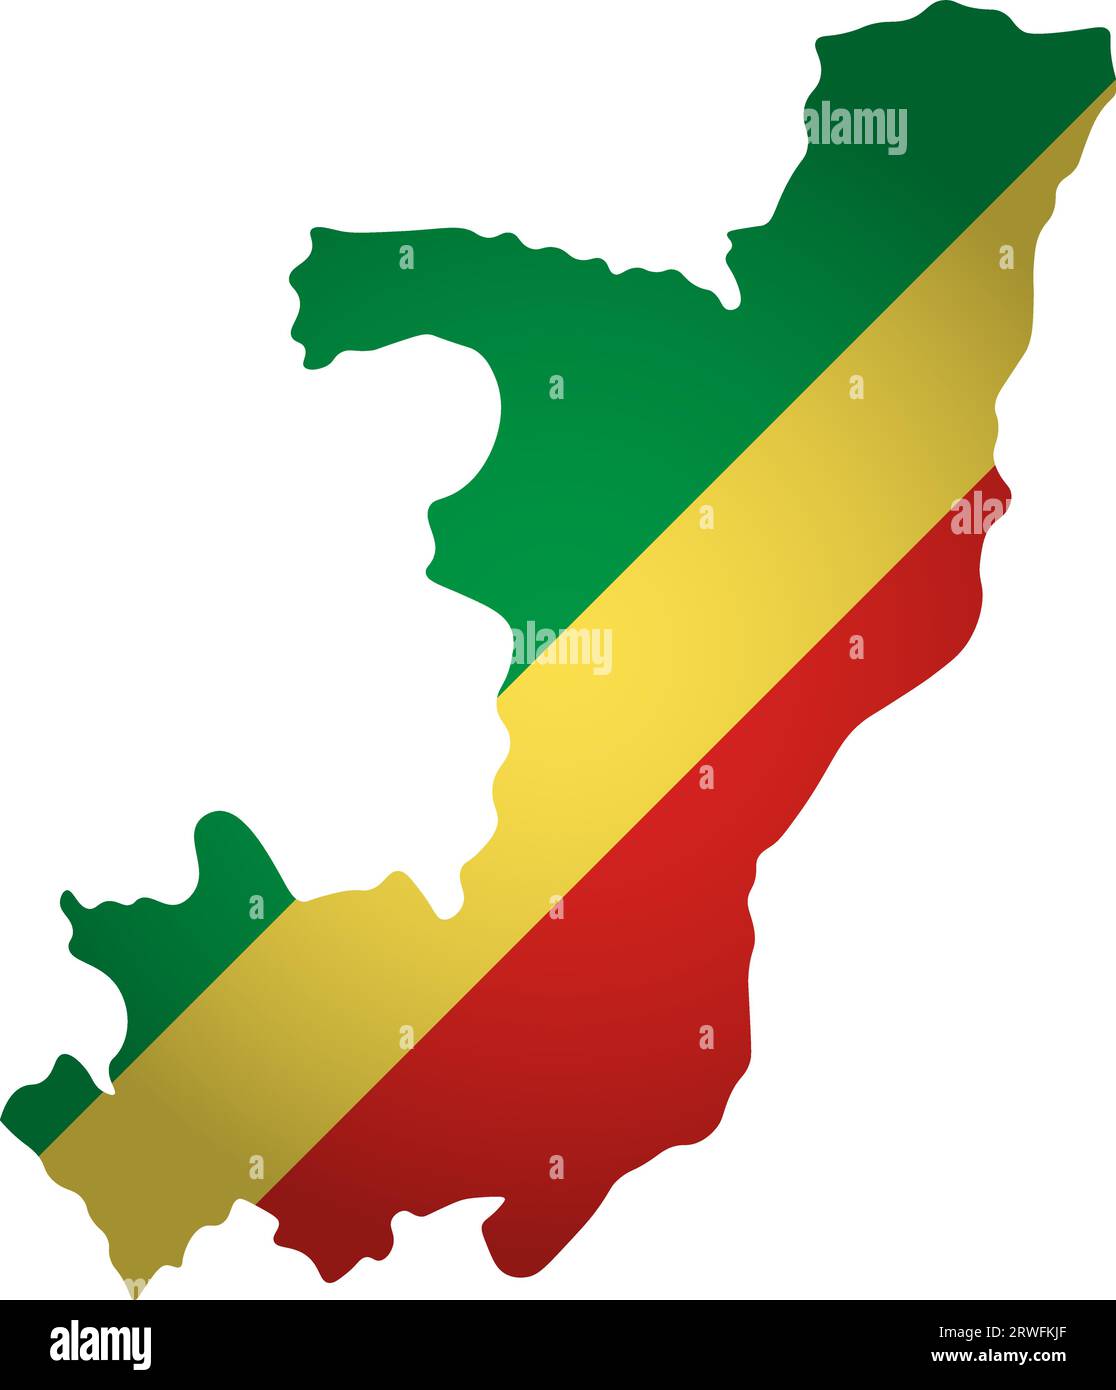 Illustration avec drapeau national avec forme simplifiée de la carte de la République du Congo (jpg). Ombre de volume sur la carte Illustration de Vecteur